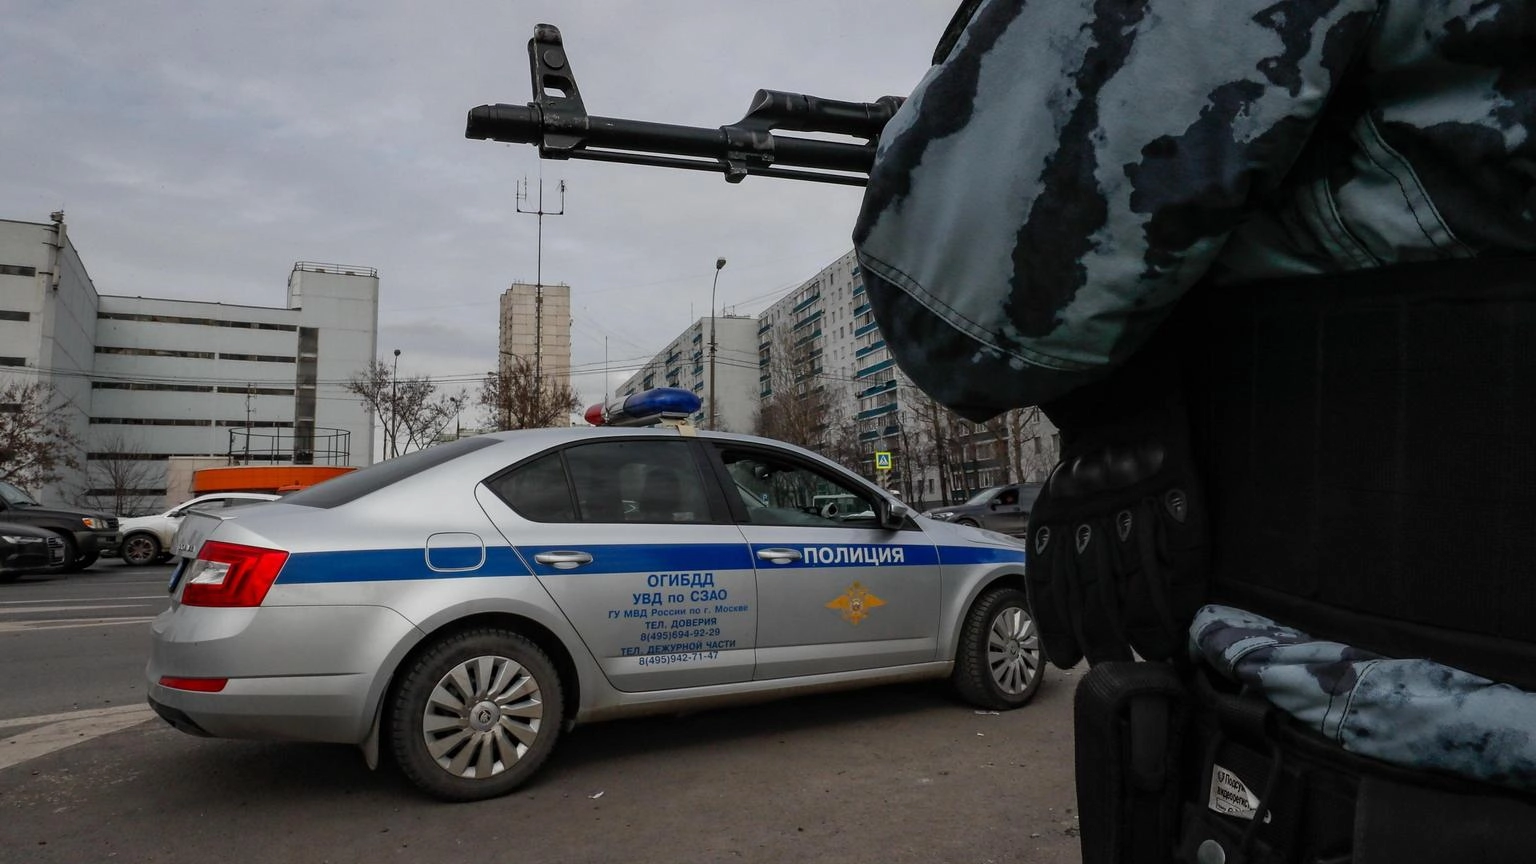 Media, nell'autobomba a Mosca ferito funzionario militare